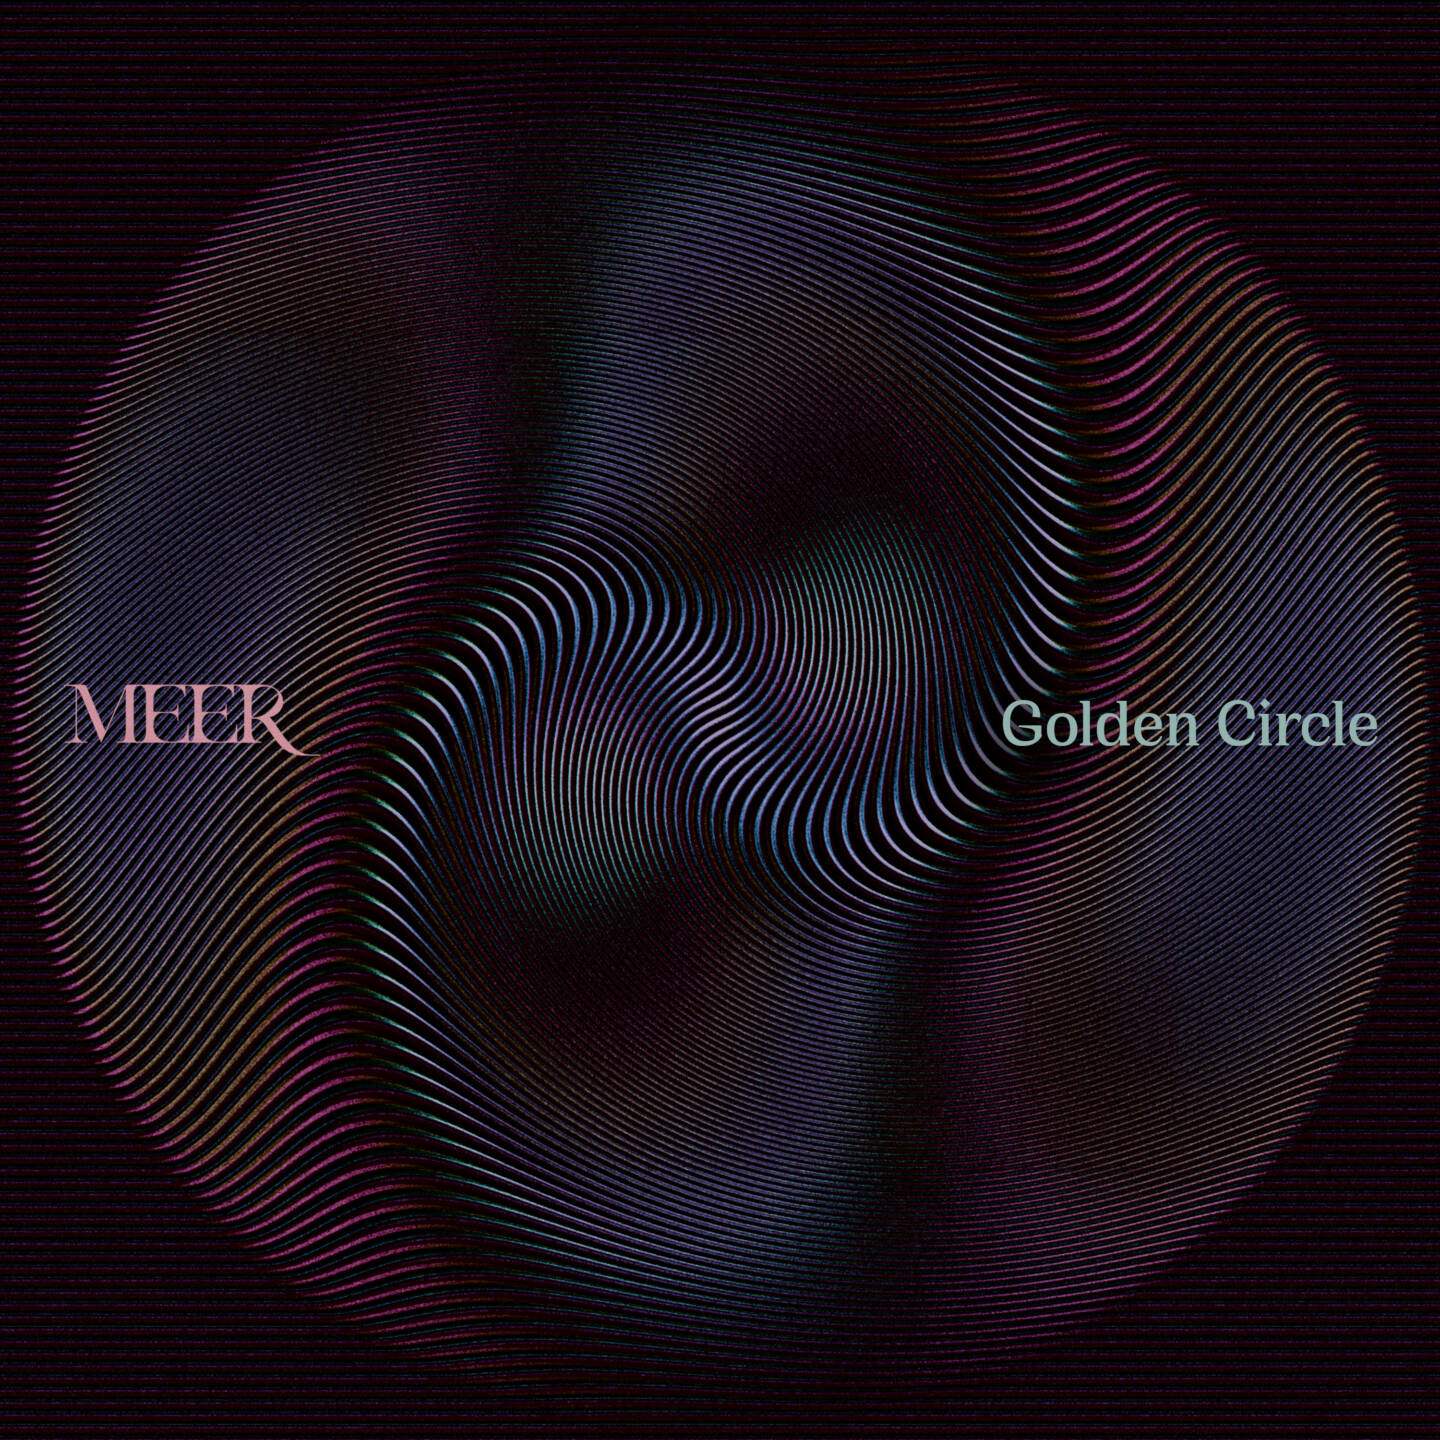 Norwegian prog pop shooting stars MEER unveil new single Golden Circle